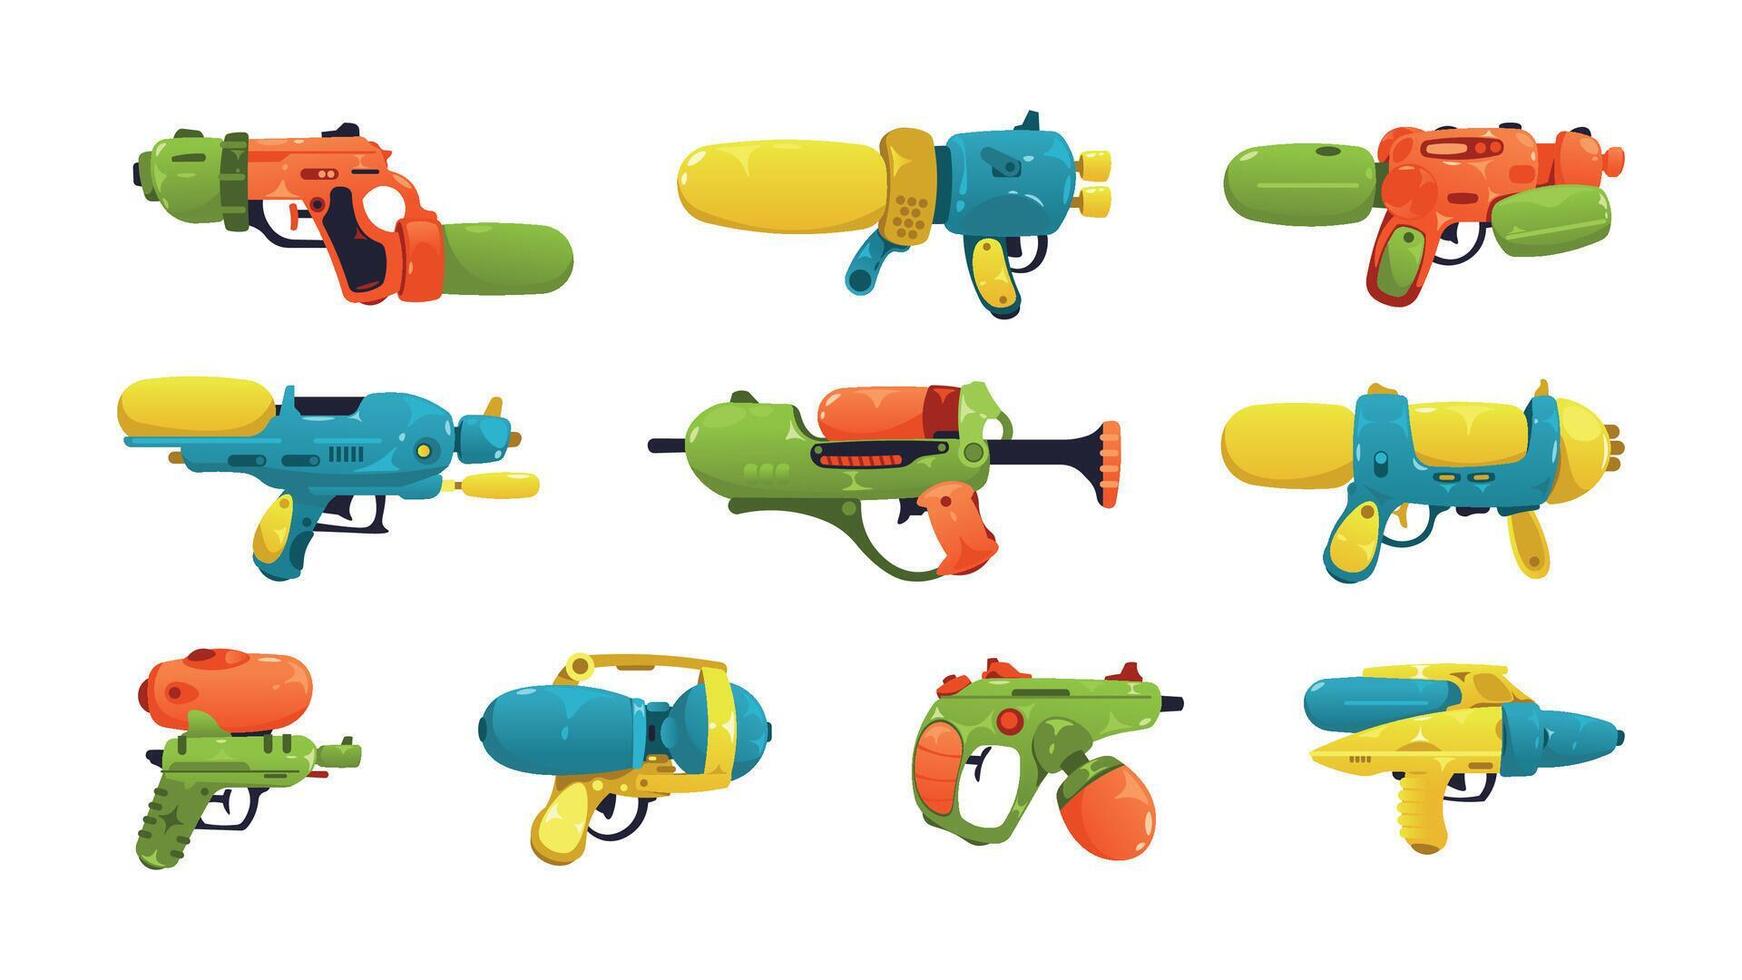 Karikatur Wasser Pistole. Kinder Spielzeug Waffen, Comic Plastik kindisch Pistole Ausrüstung nass schießen zum Sommer- Spiel, glücklich Kindheit. Vektor isoliert einstellen